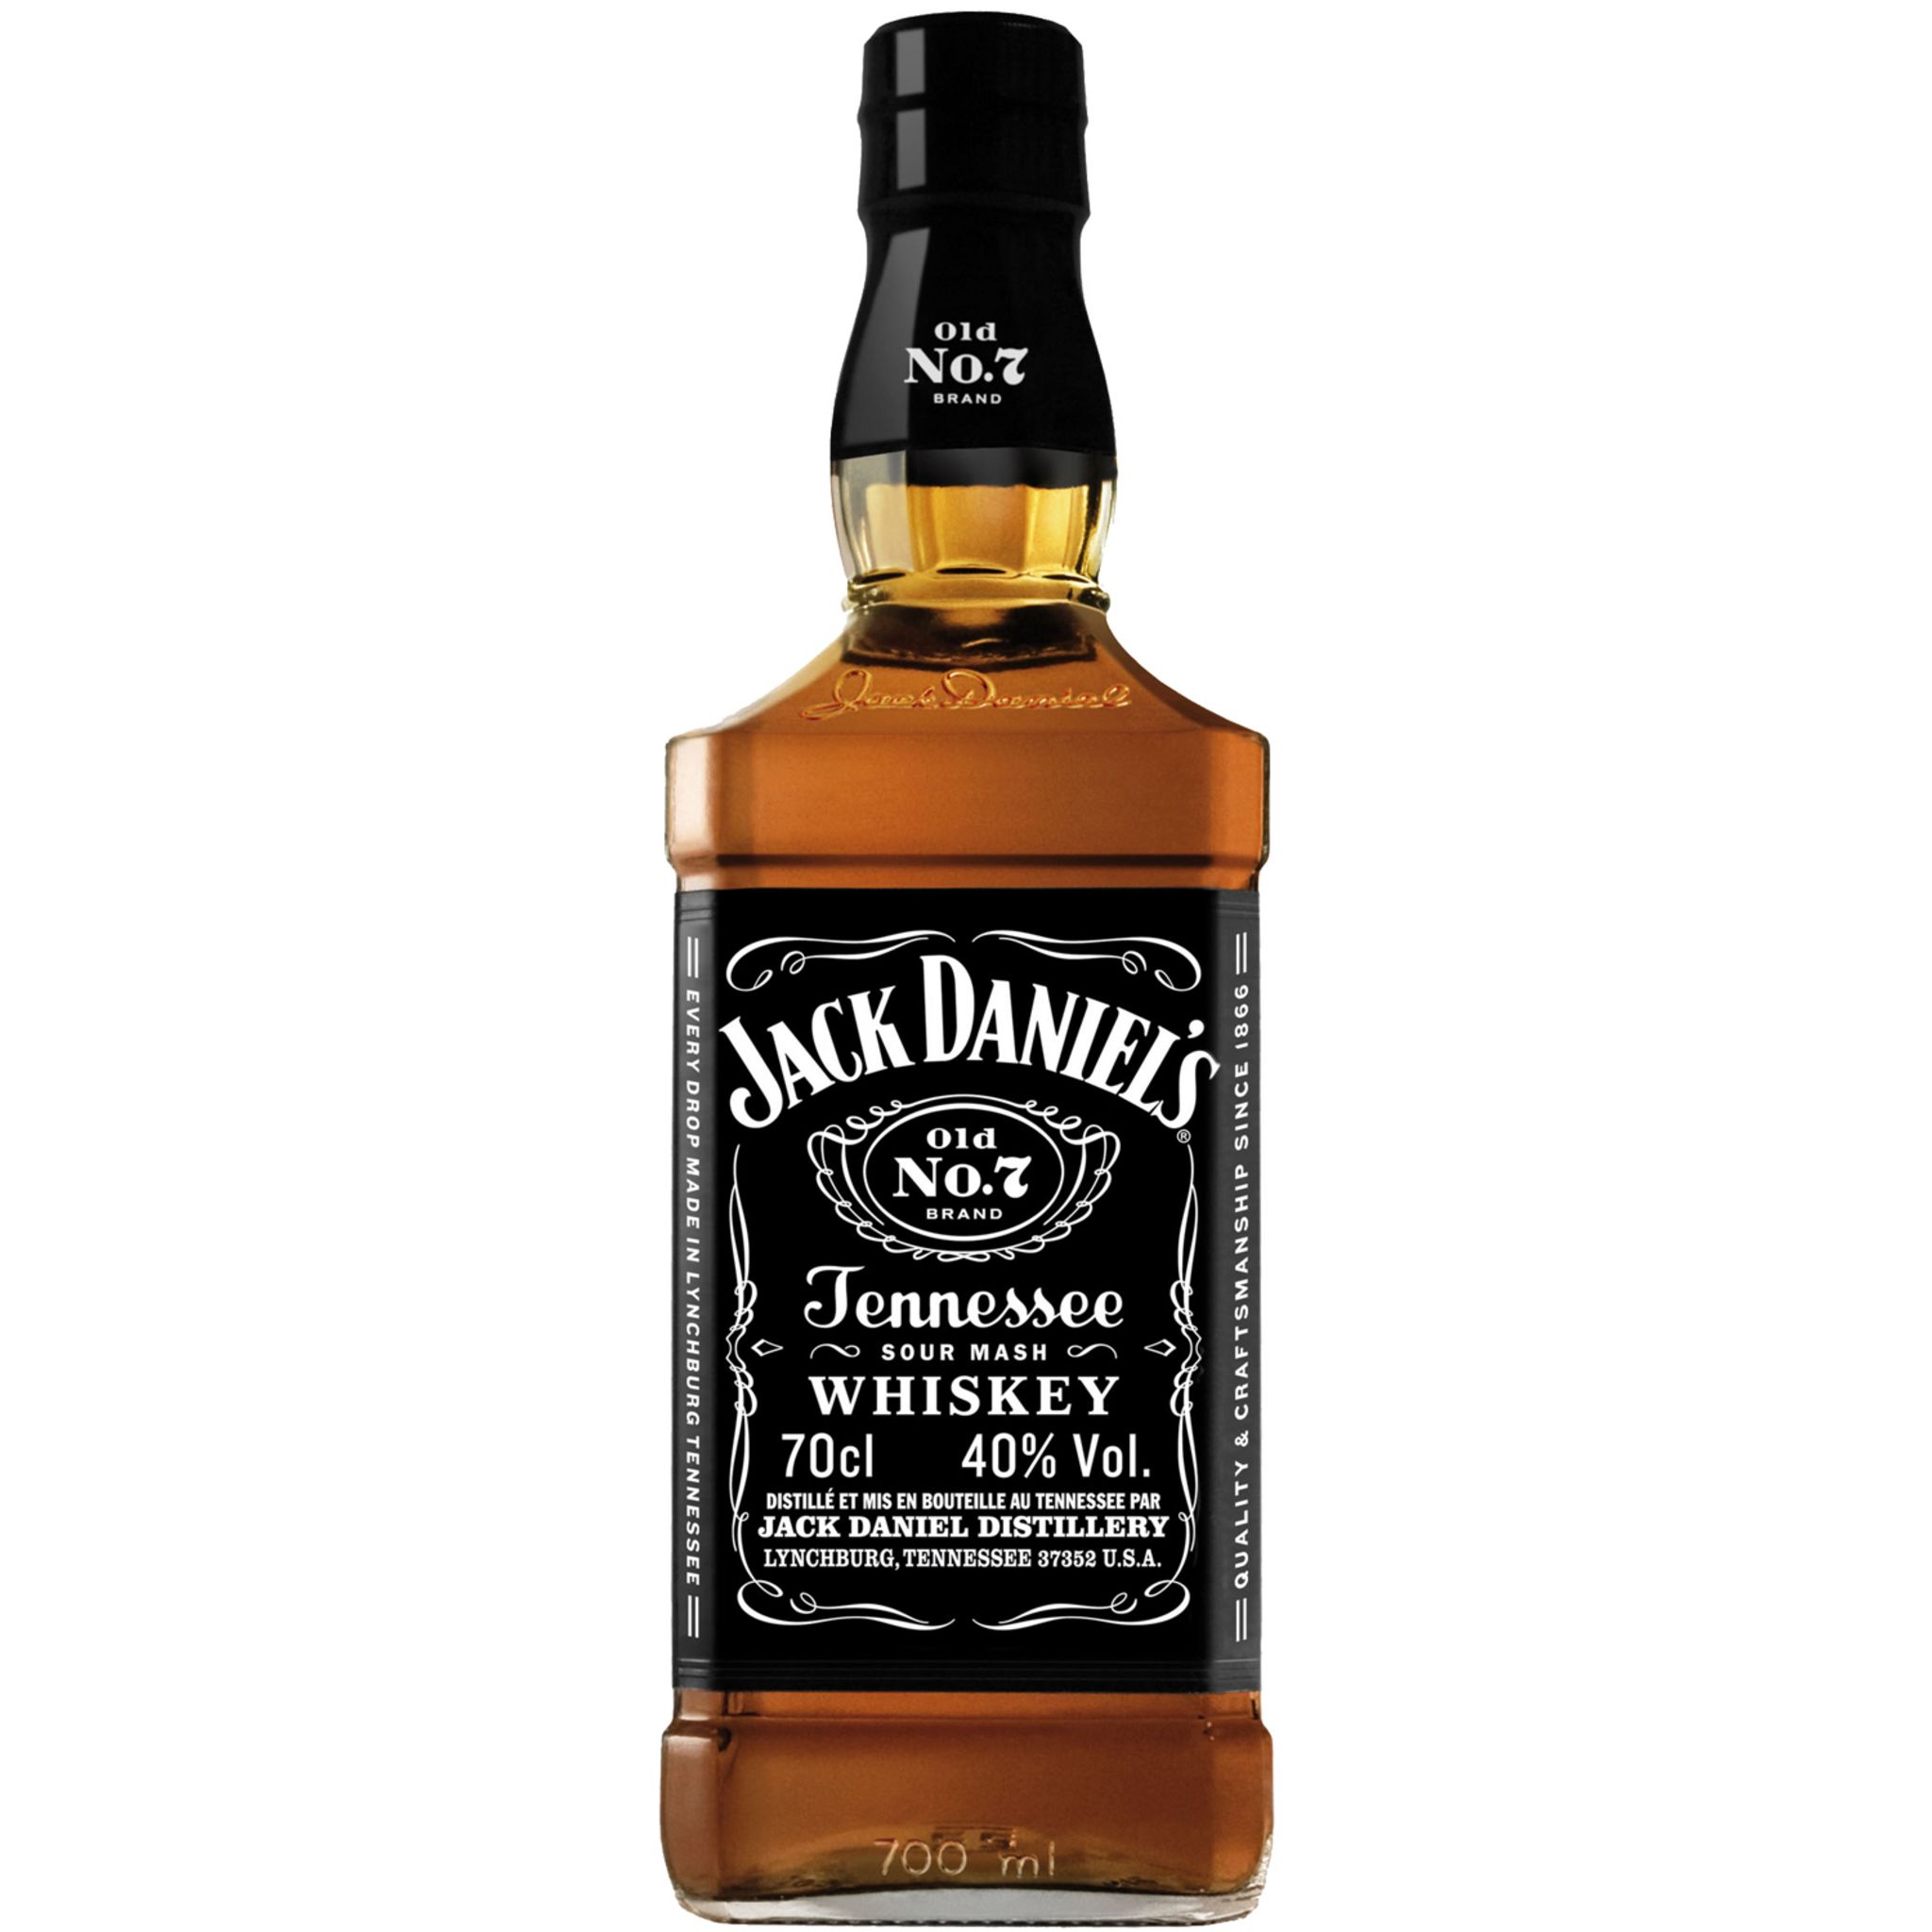 Джек даниэль. Джек Дениел. Виски Джек Дэниэлс Art. Джек Дениэл 3. Бутылка виски Джек Дэниэлс.